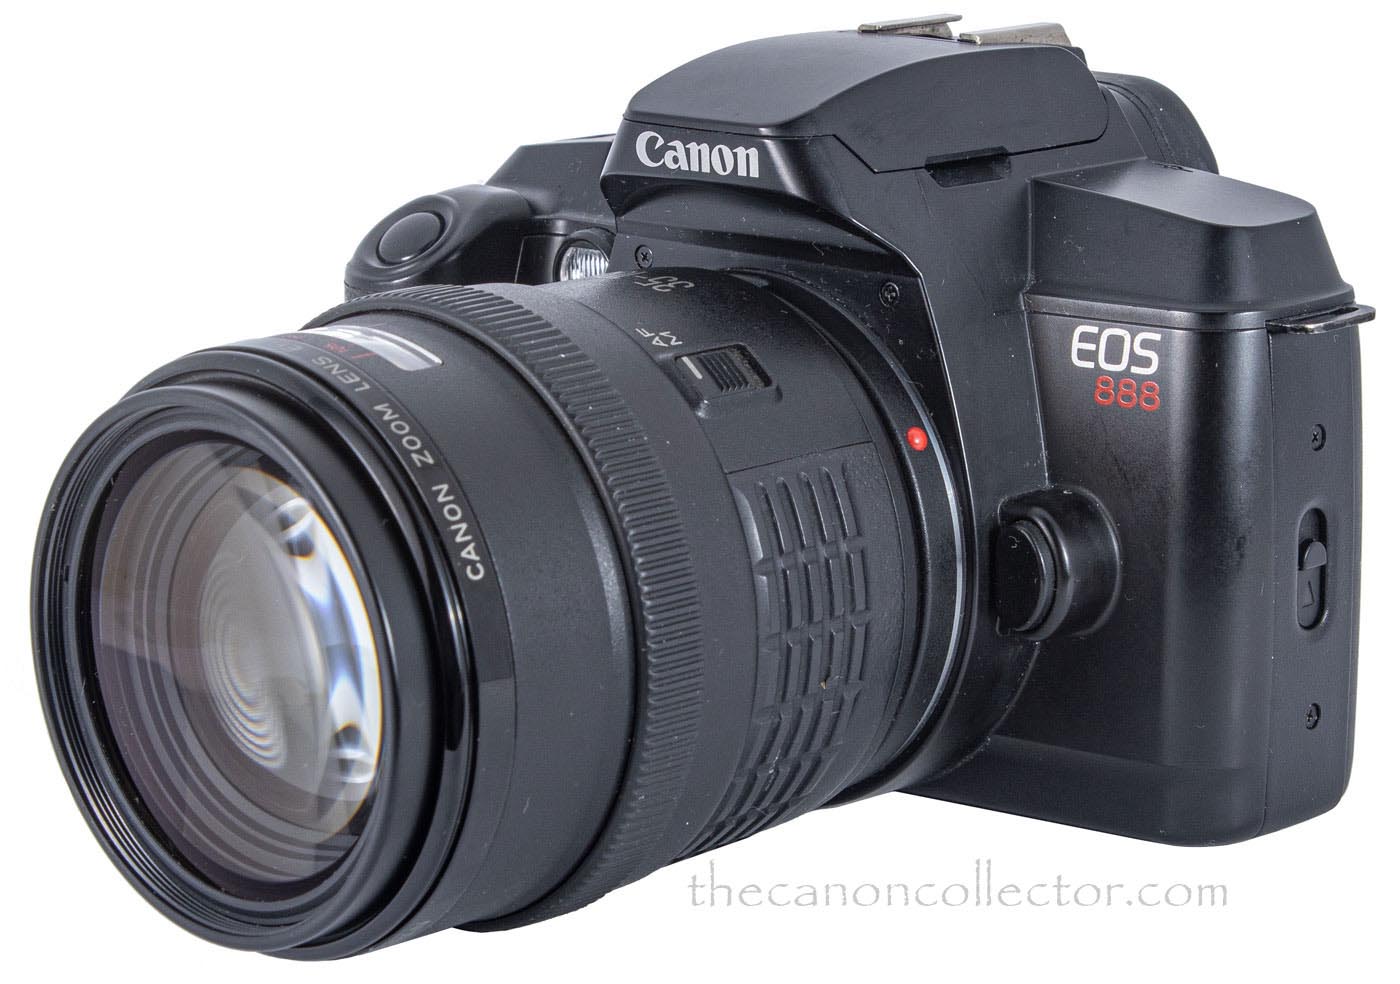 Canon EOS 888